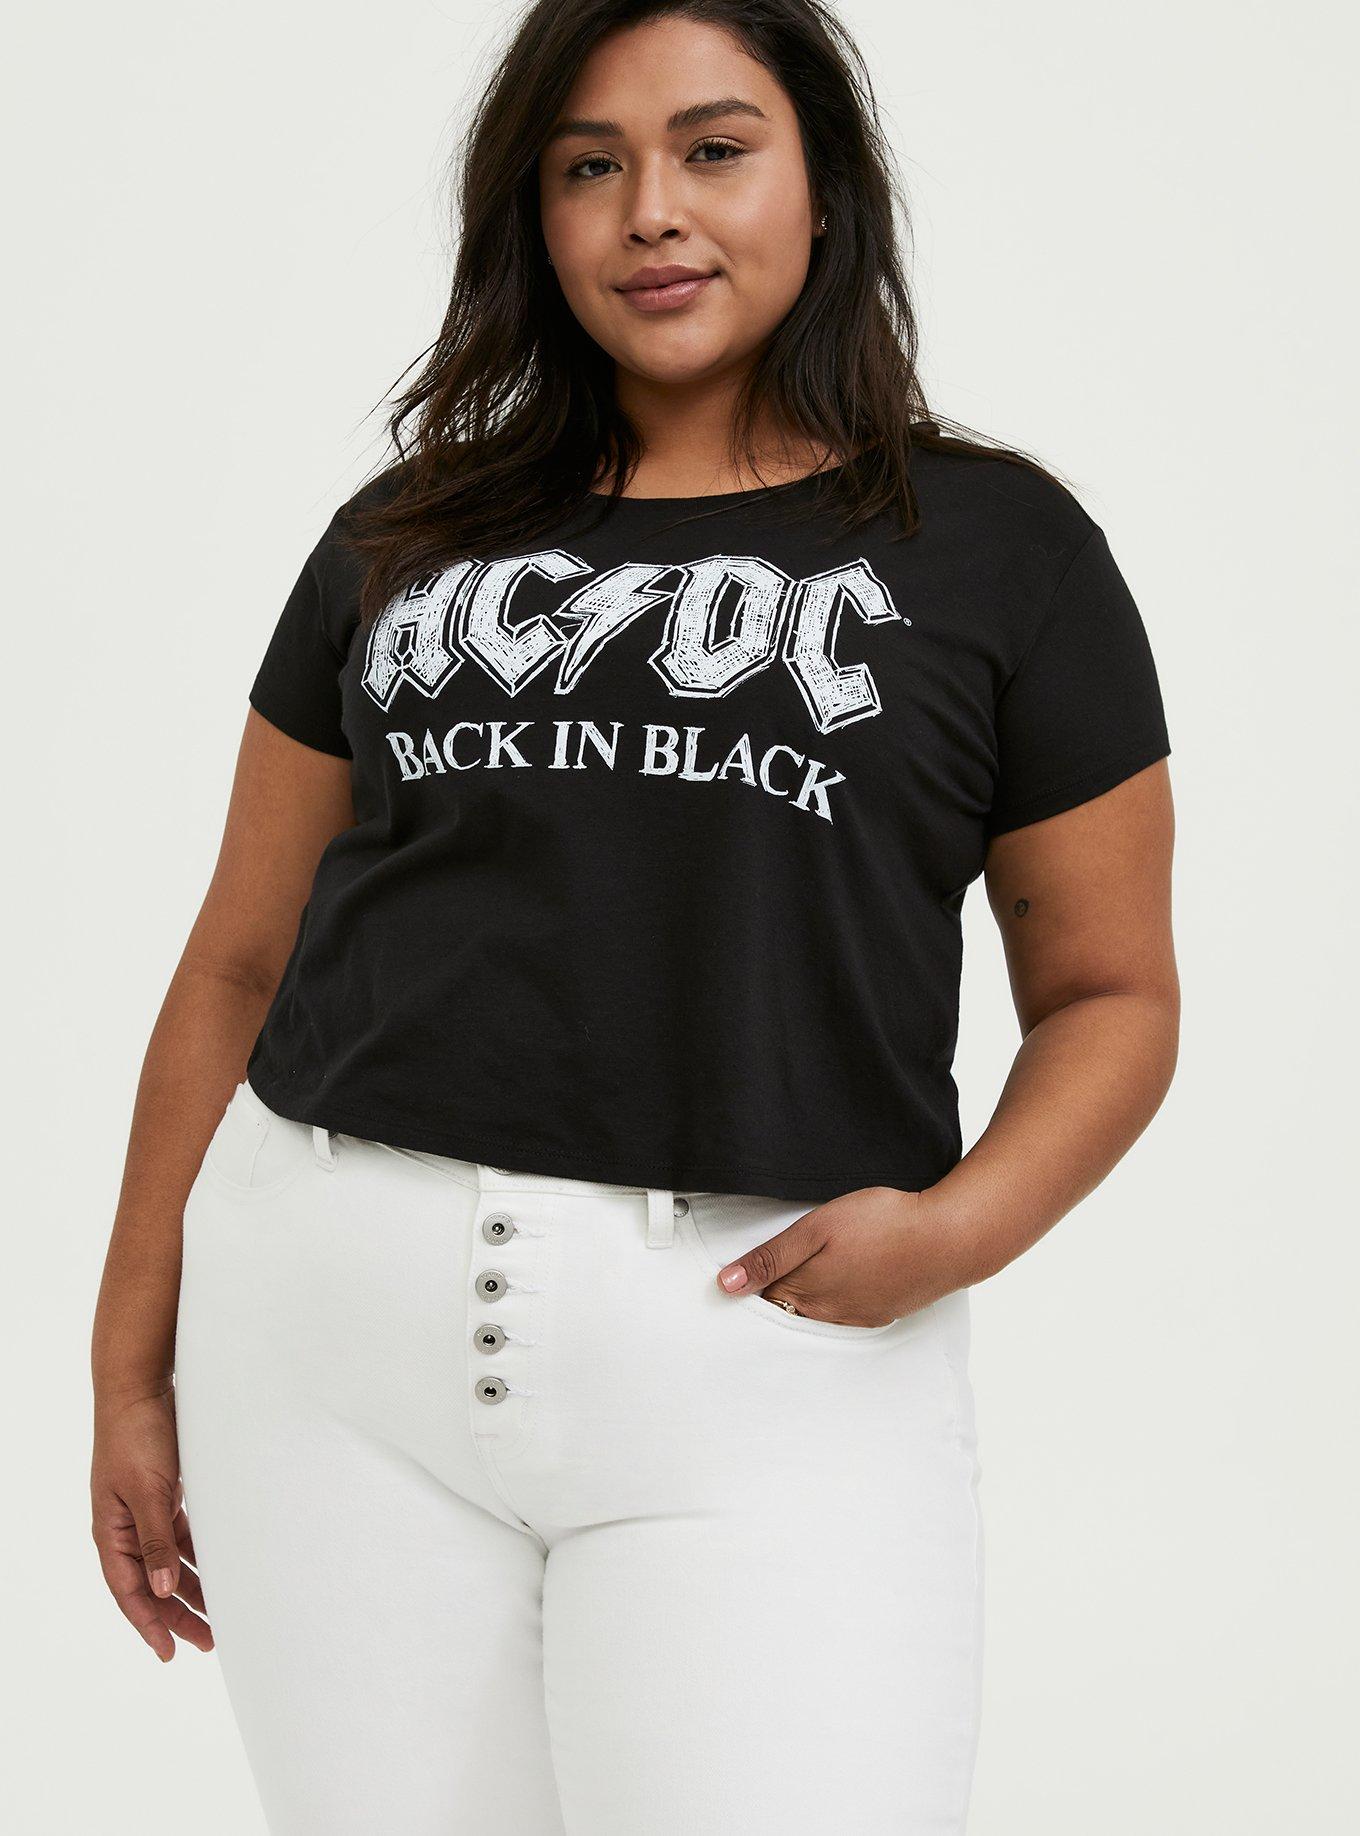 Plus Size - AC/DC Back In Black Black Crop Crew Tee - Torrid